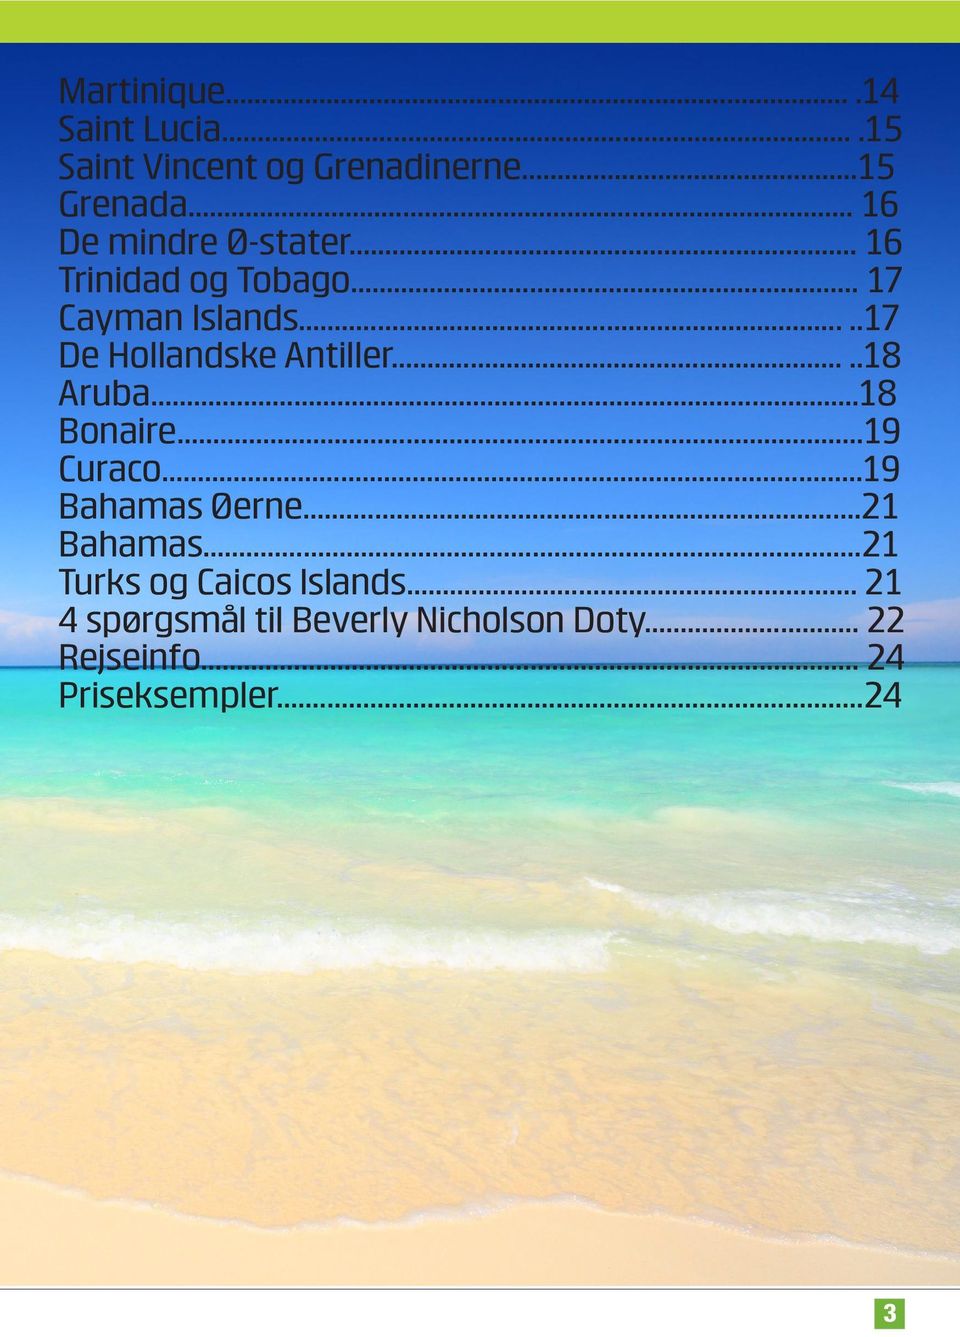 ....17 De Hollandske Antiller.....18 Aruba...18 Bonaire...19 Curaco...19 Bahamas Øerne.